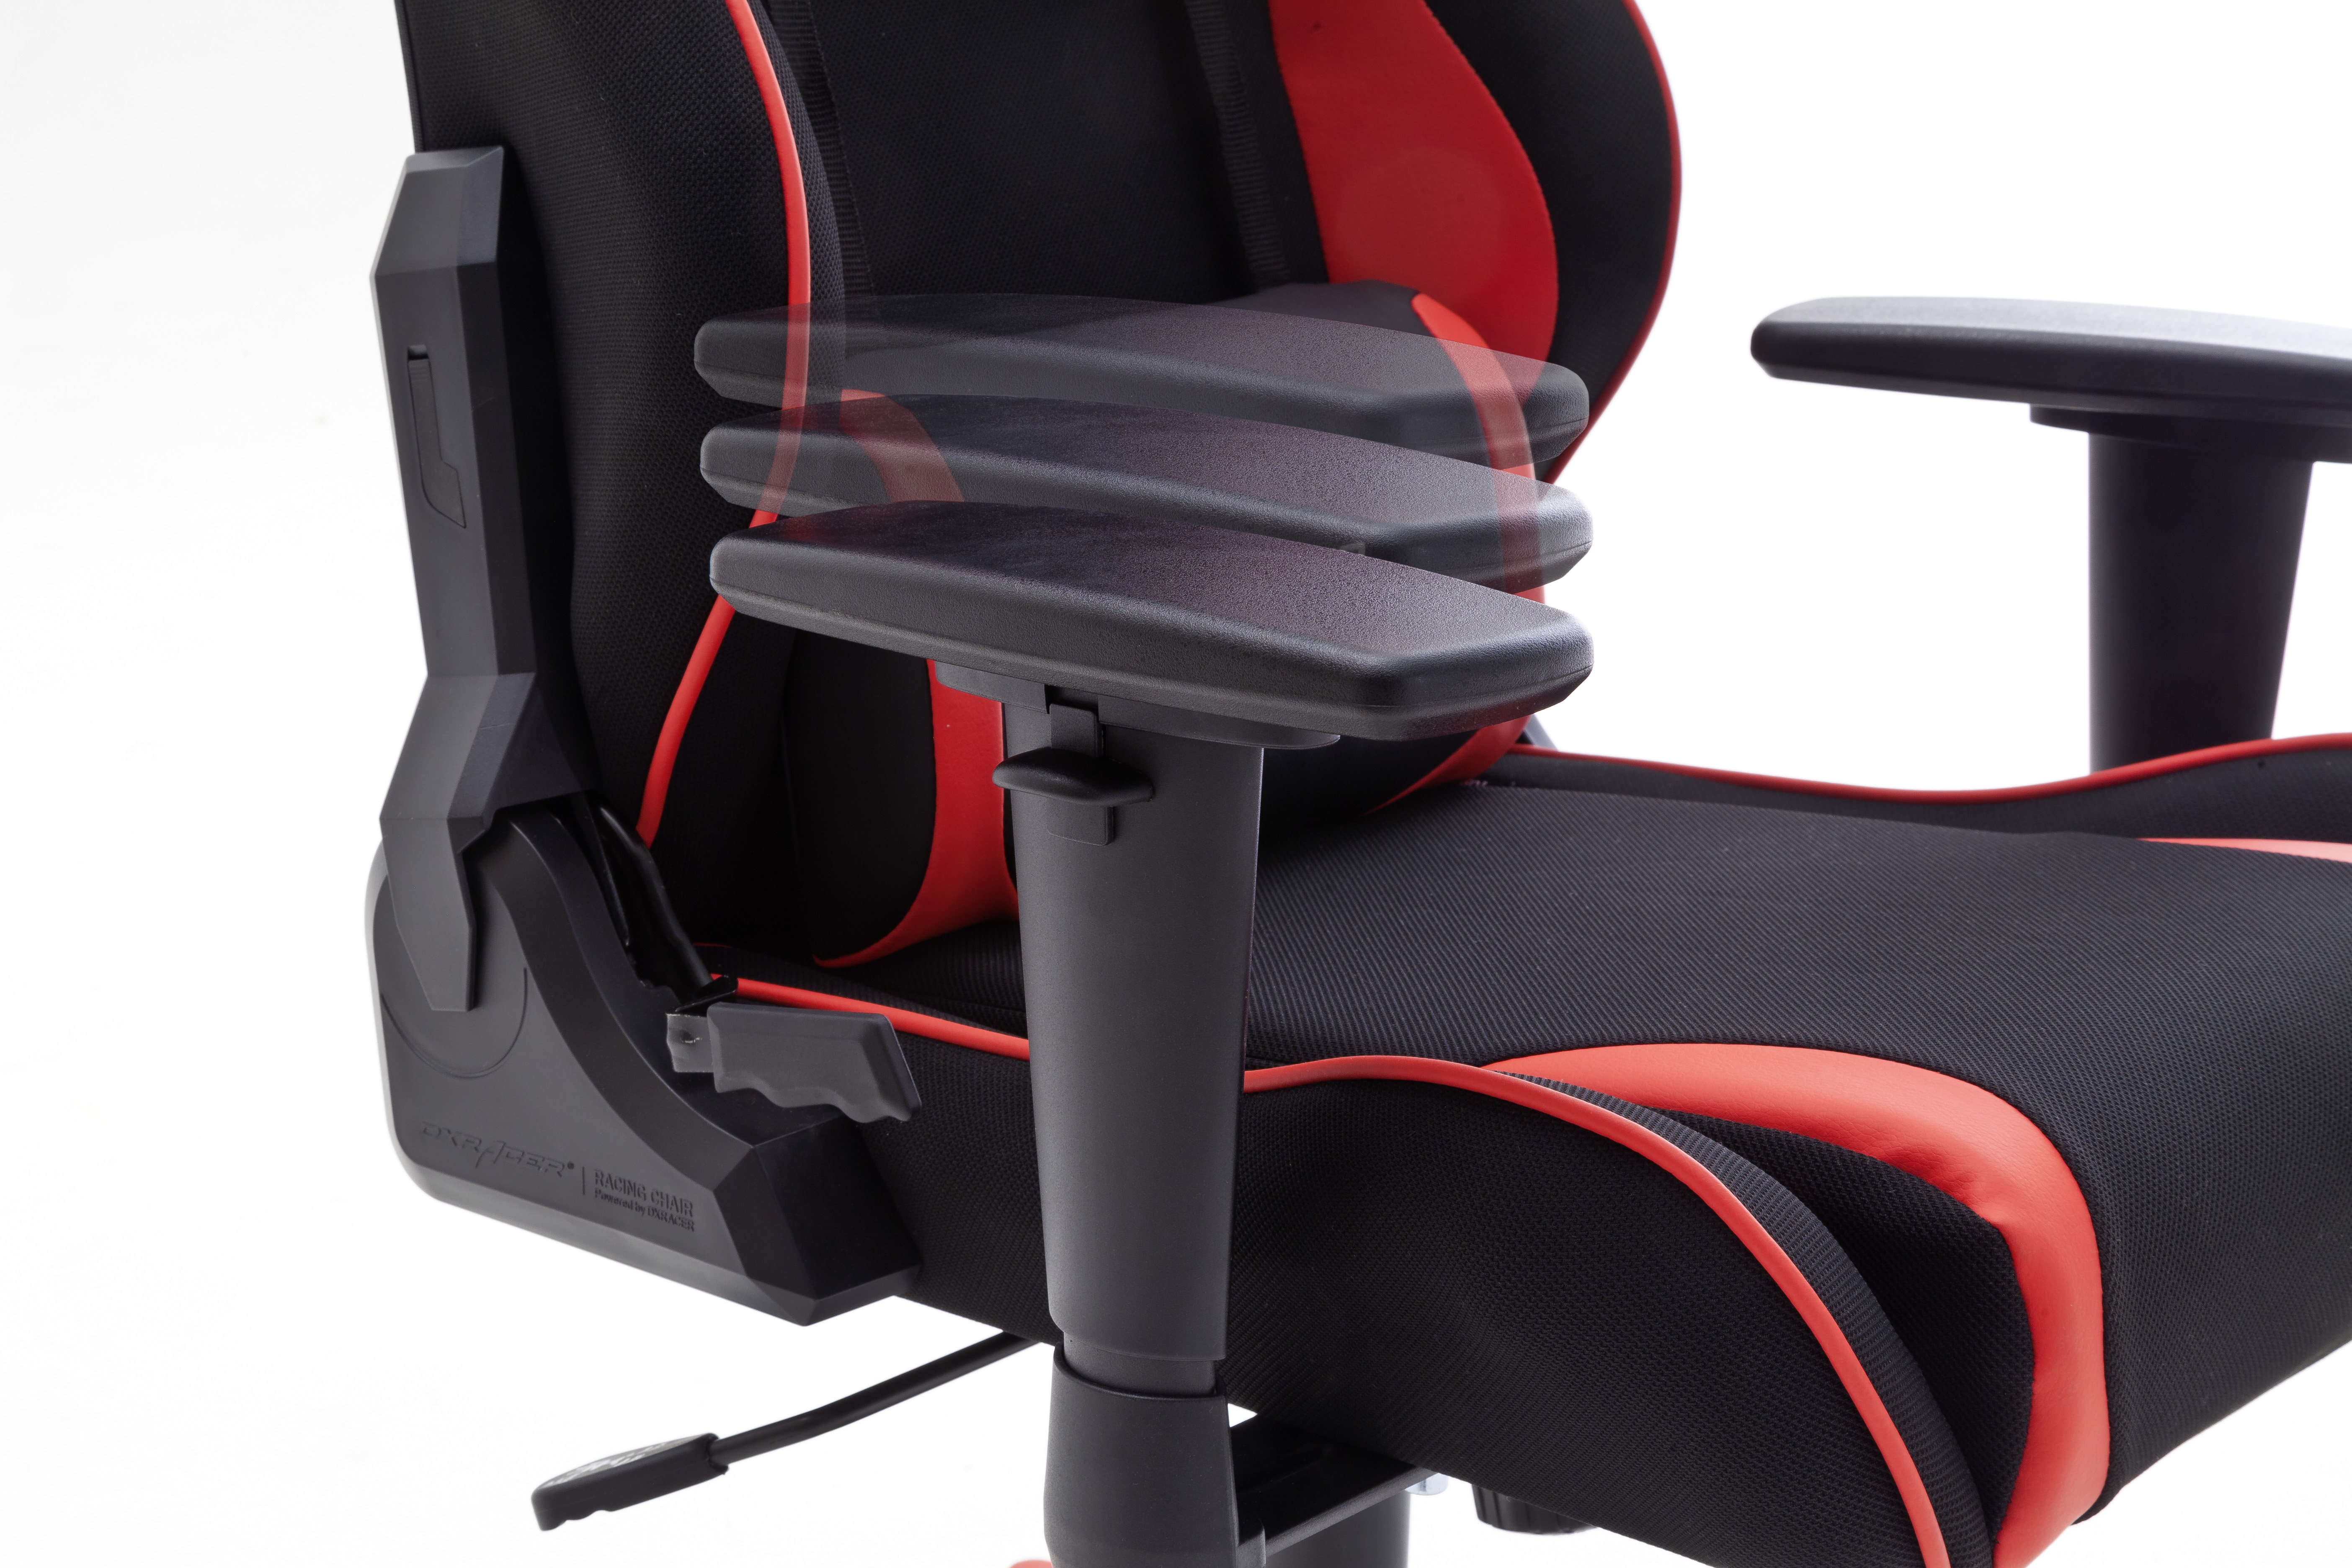 DXRACER Racing RW86 Gaming Stuhl, schwarz/rot